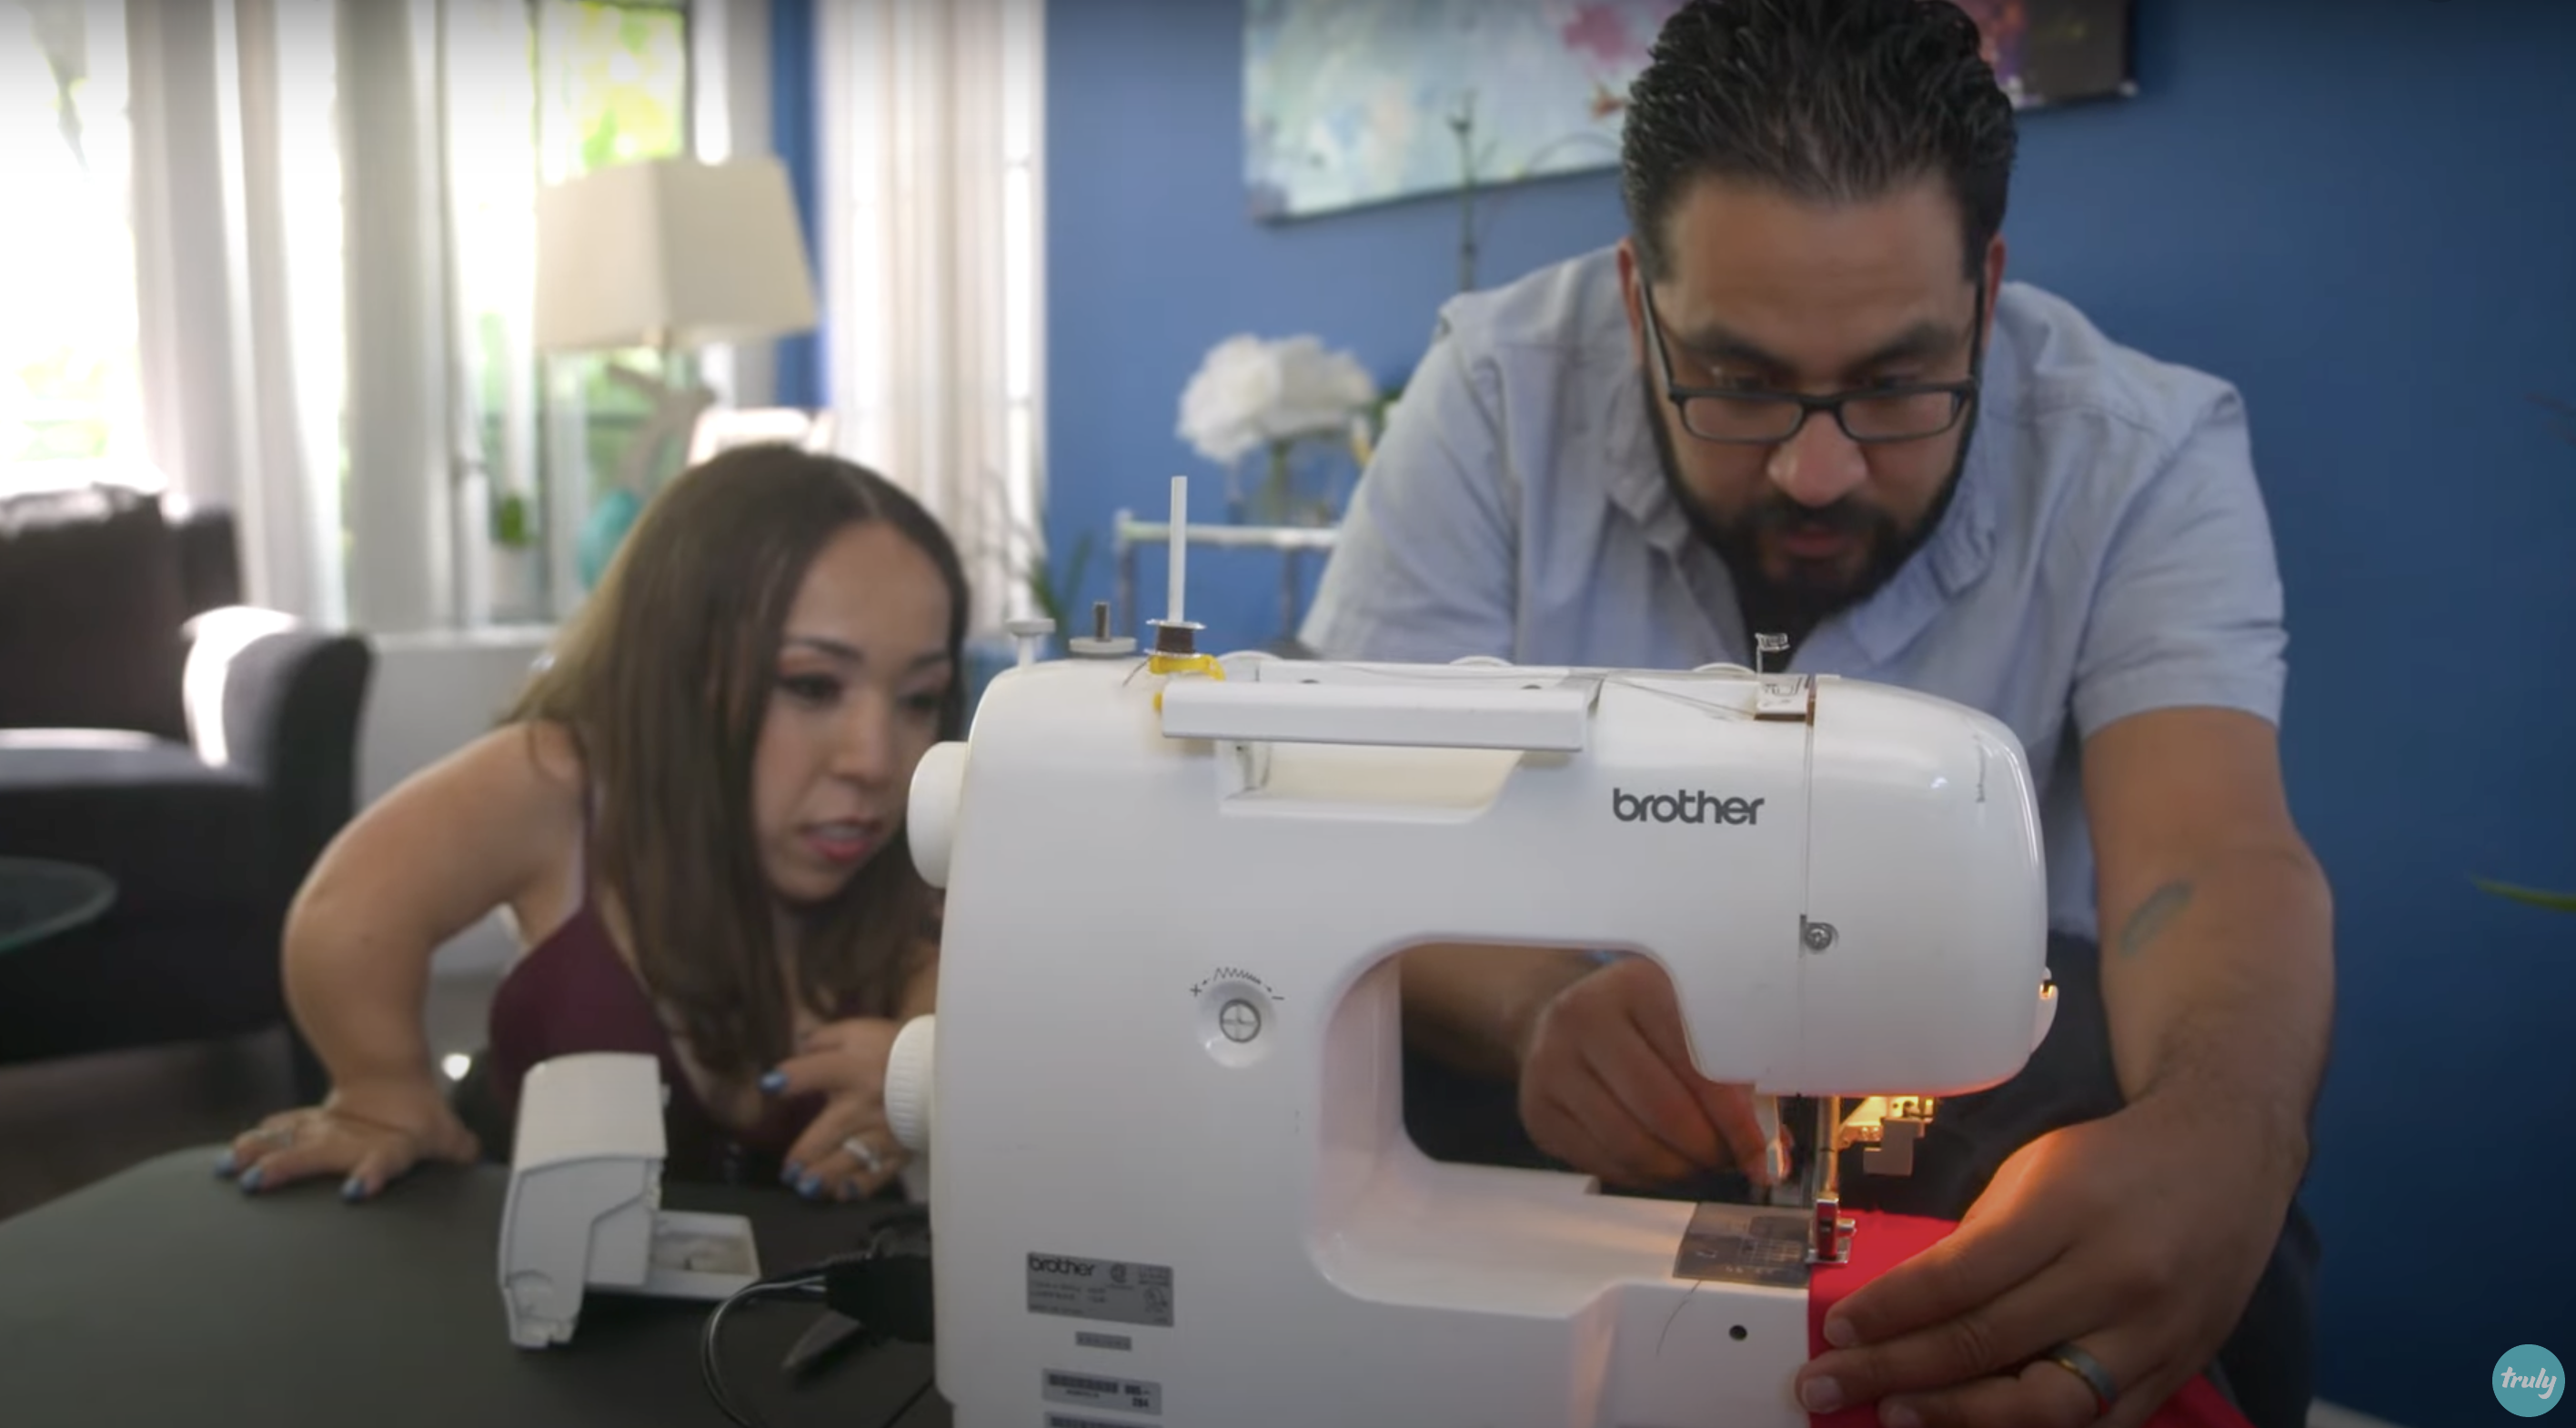 Bryan benutzt eine Nähmaschine, um Änderungen an Yesis Hemd vorzunehmen | Quelle: Youtube.com/Truly